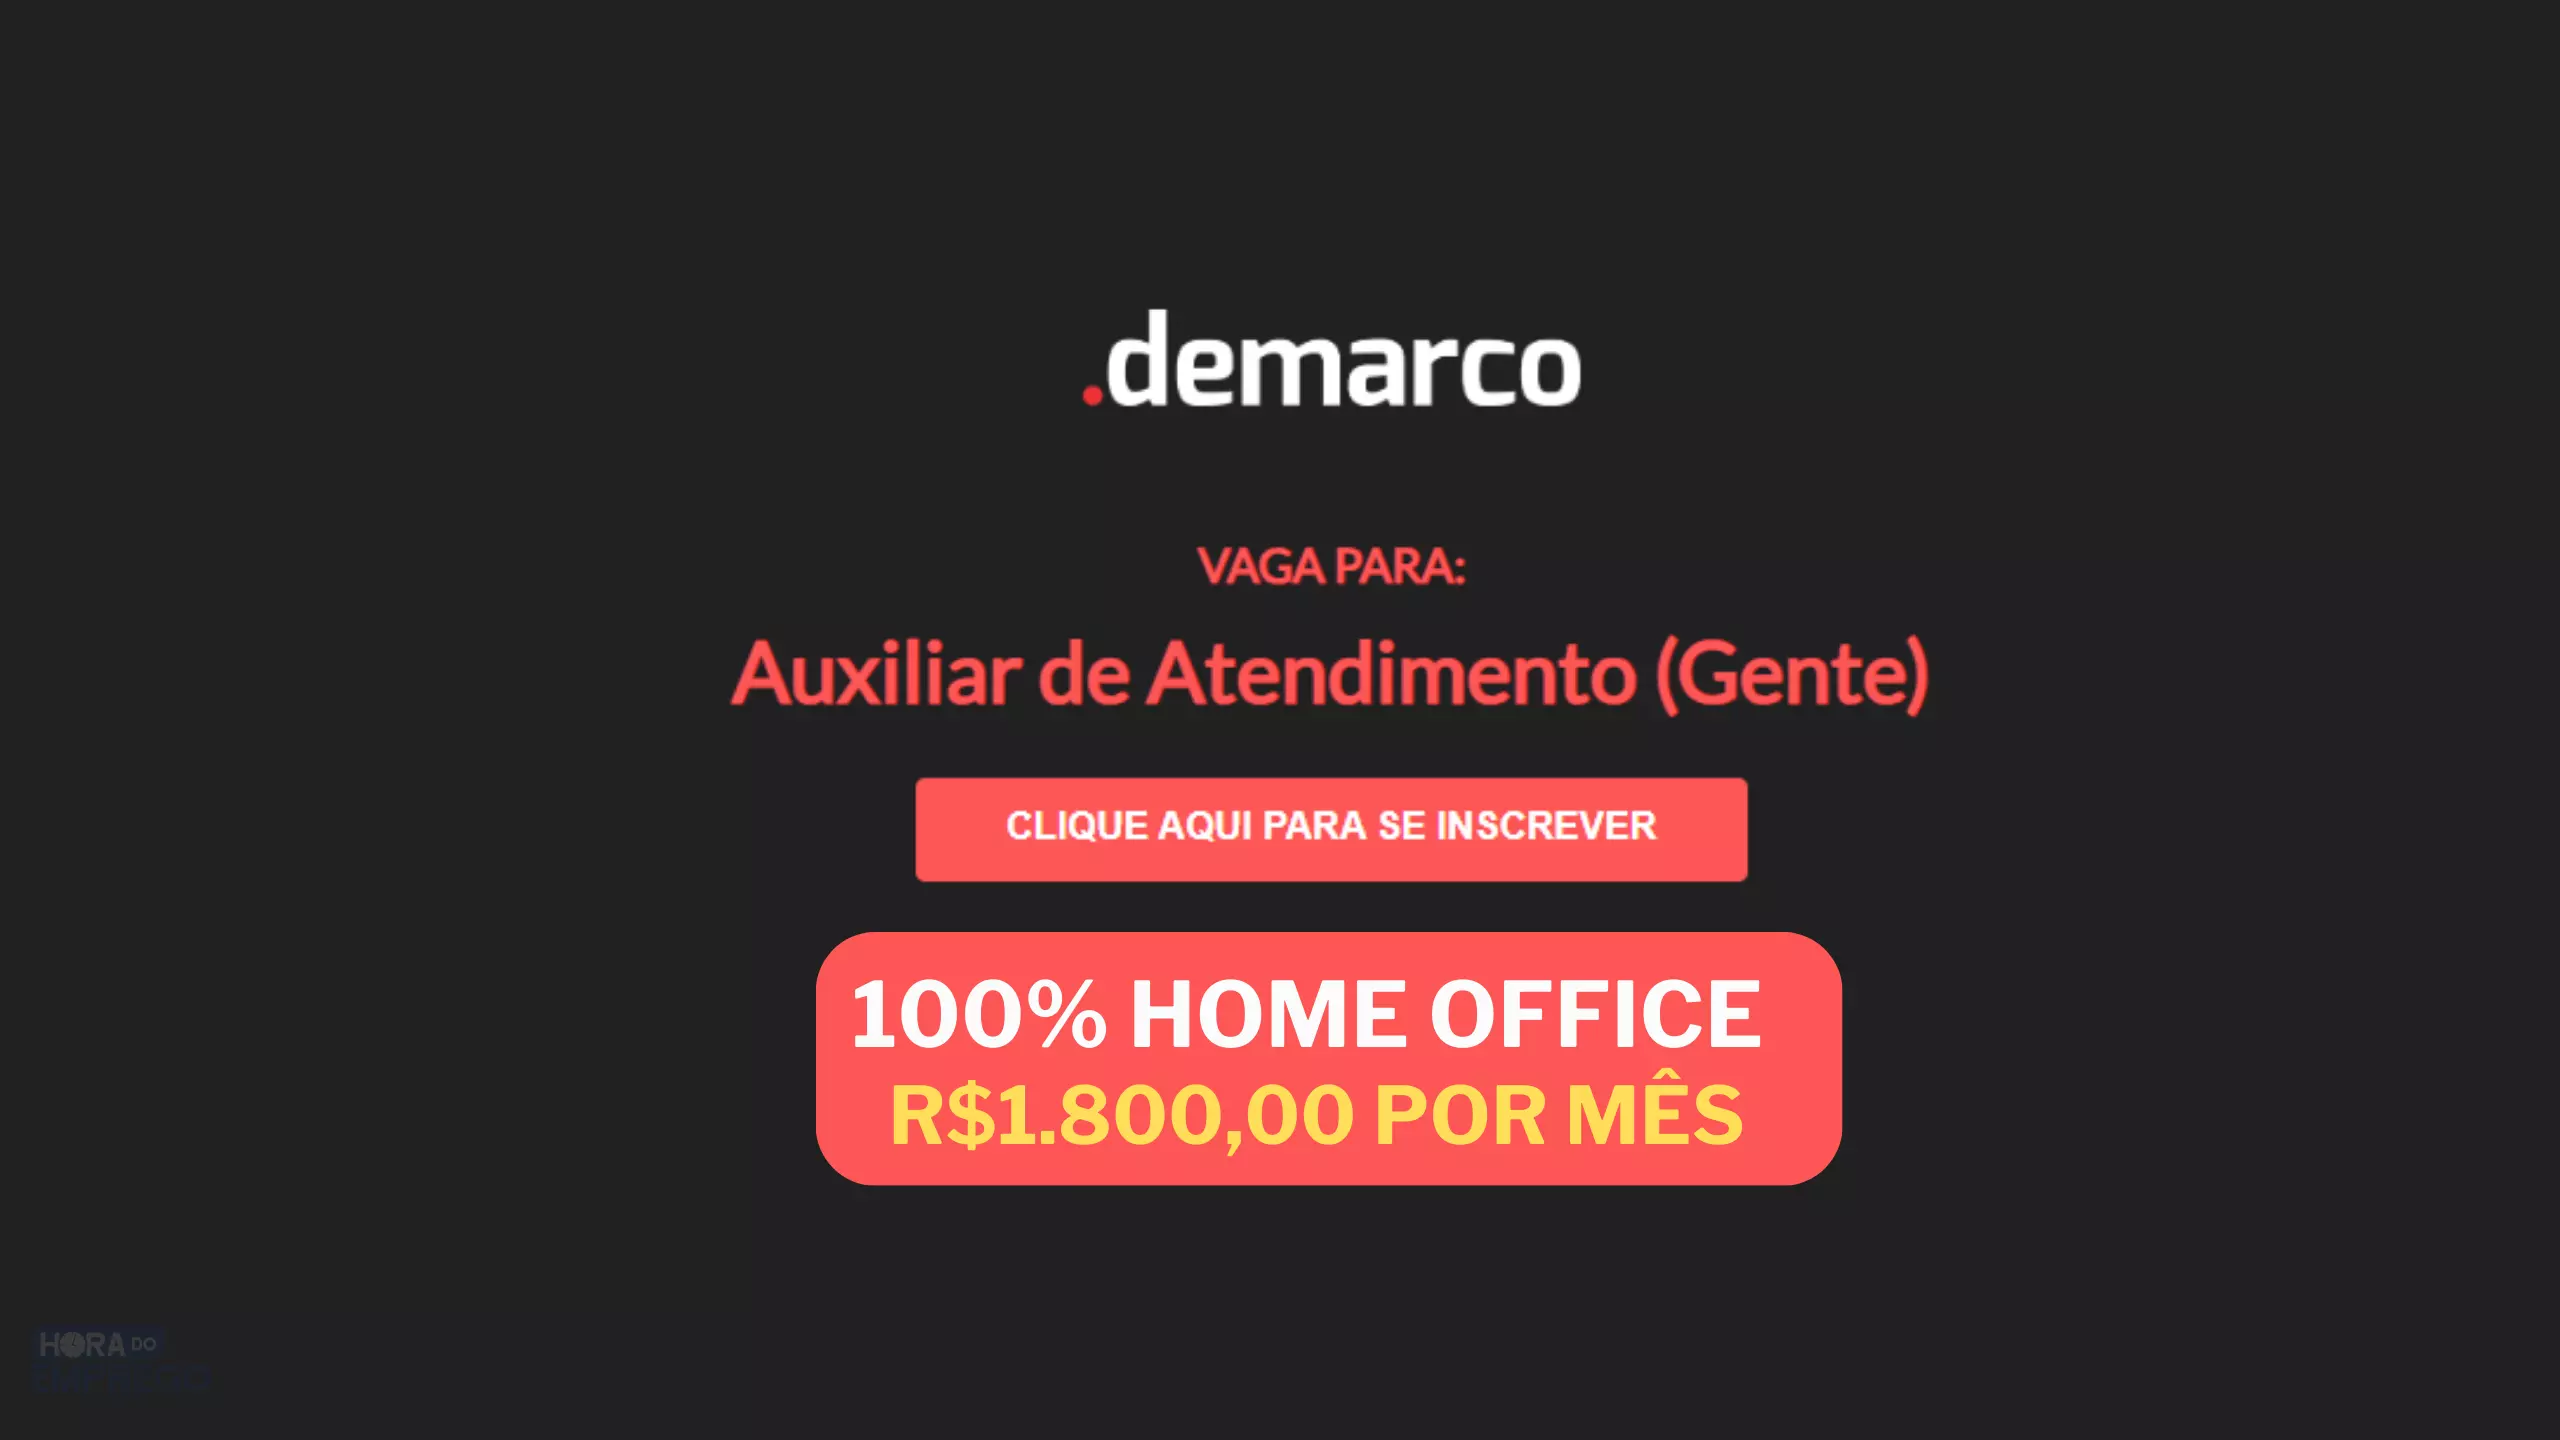 Unimed abre vagas HOME OFFICE para trabalhar de casa ONLINE como DIGITADOR  DE FATURAS com salário de até R$ 1.800,00 - Hora do Emprego DF